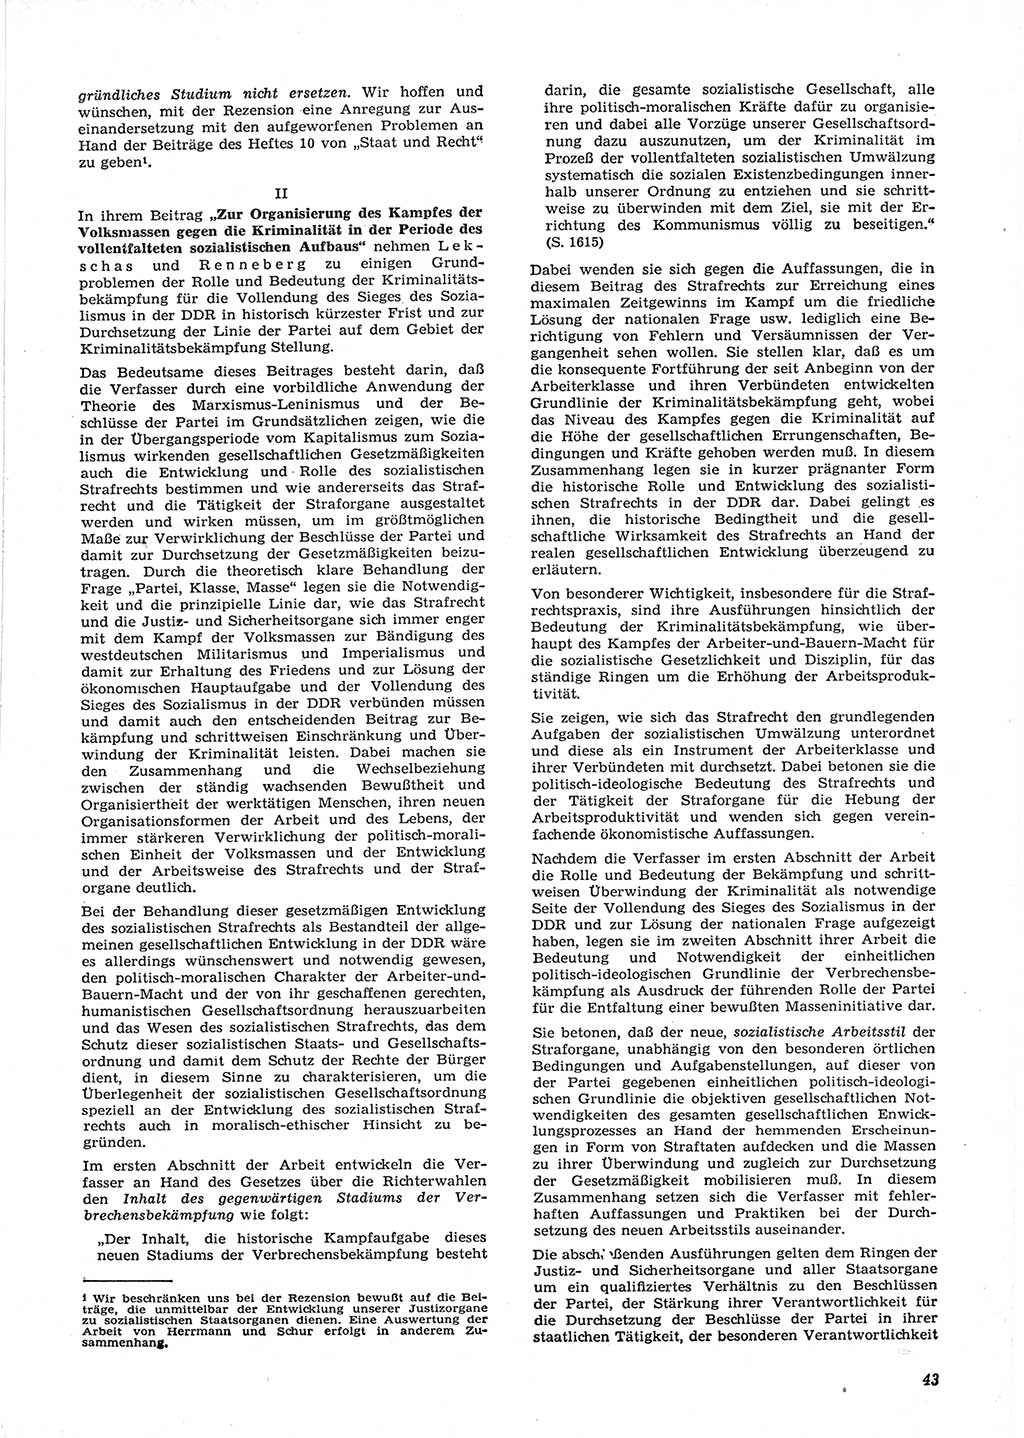 Neue Justiz (NJ), Zeitschrift für Recht und Rechtswissenschaft [Deutsche Demokratische Republik (DDR)], 15. Jahrgang 1961, Seite 43 (NJ DDR 1961, S. 43)